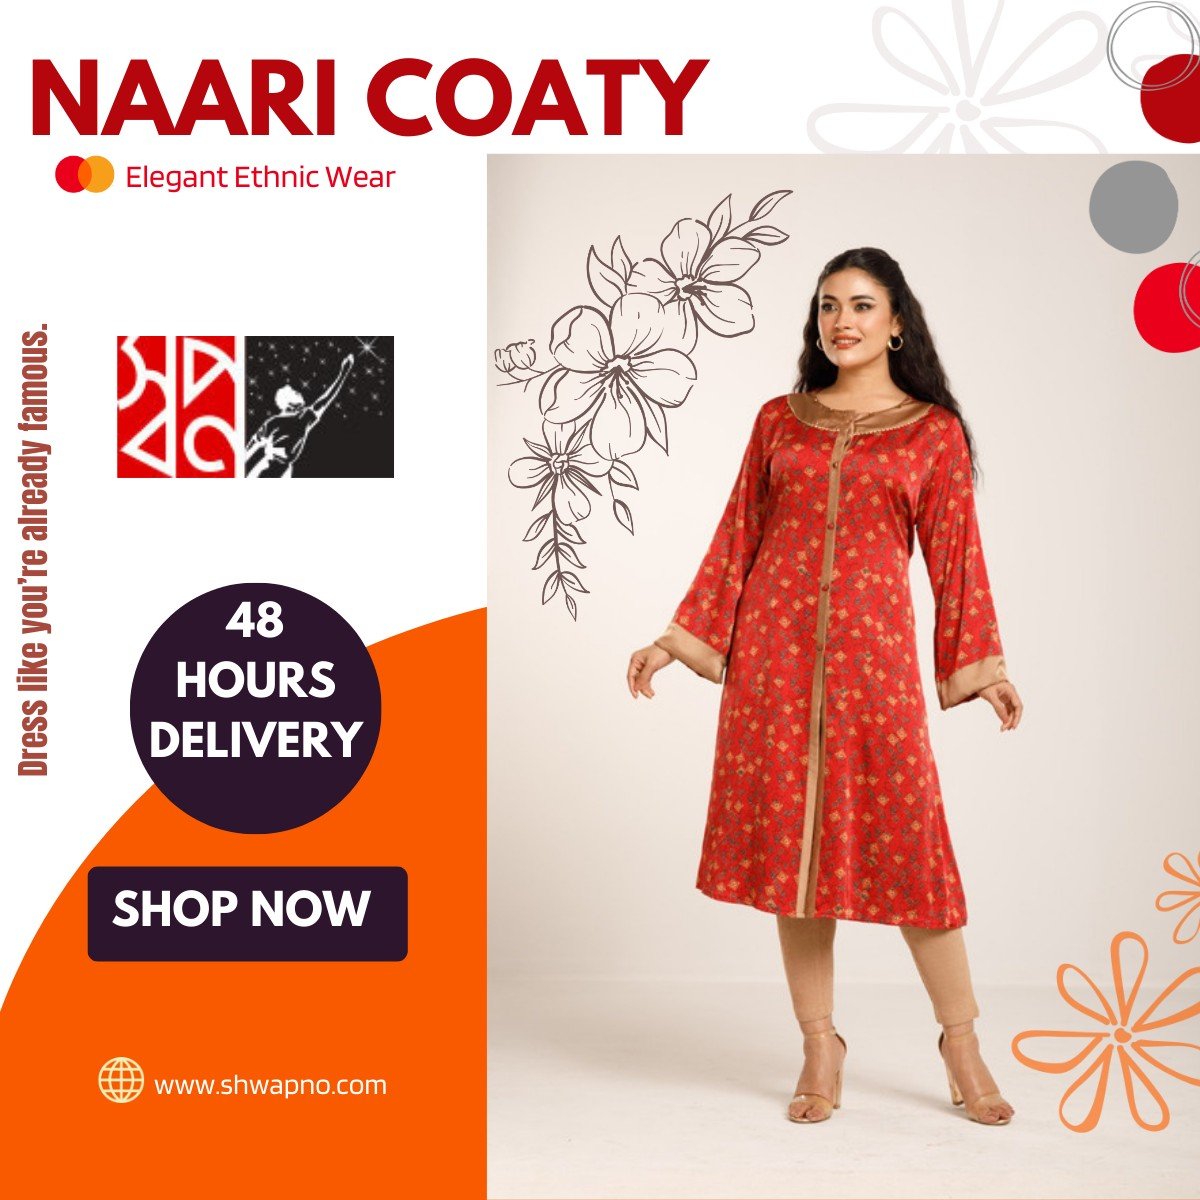 Women's Naari Coatyi Online